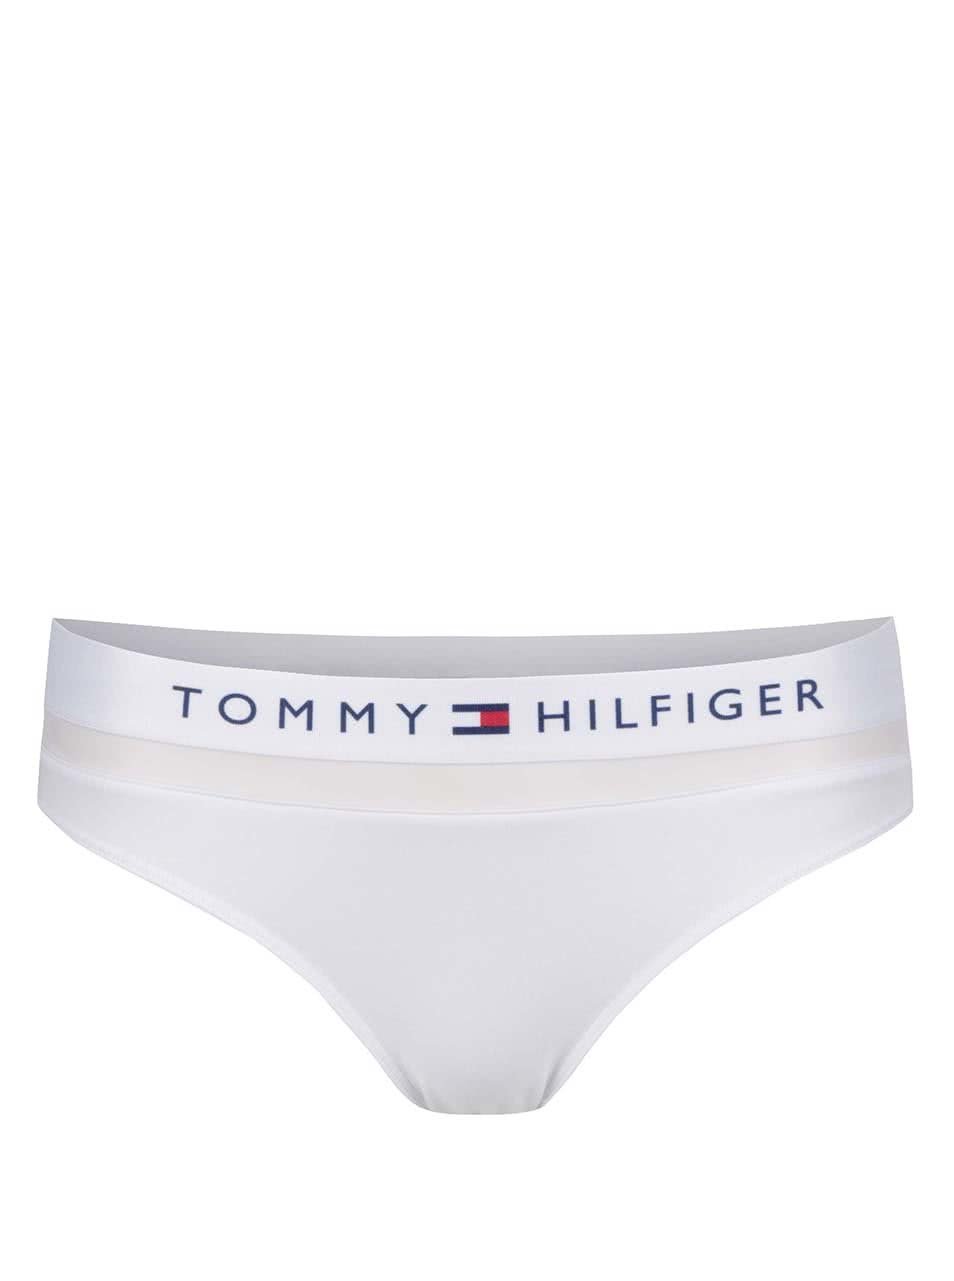 TOMMY HILFIGER bikini nohavičky UWOUW00022-100 biele